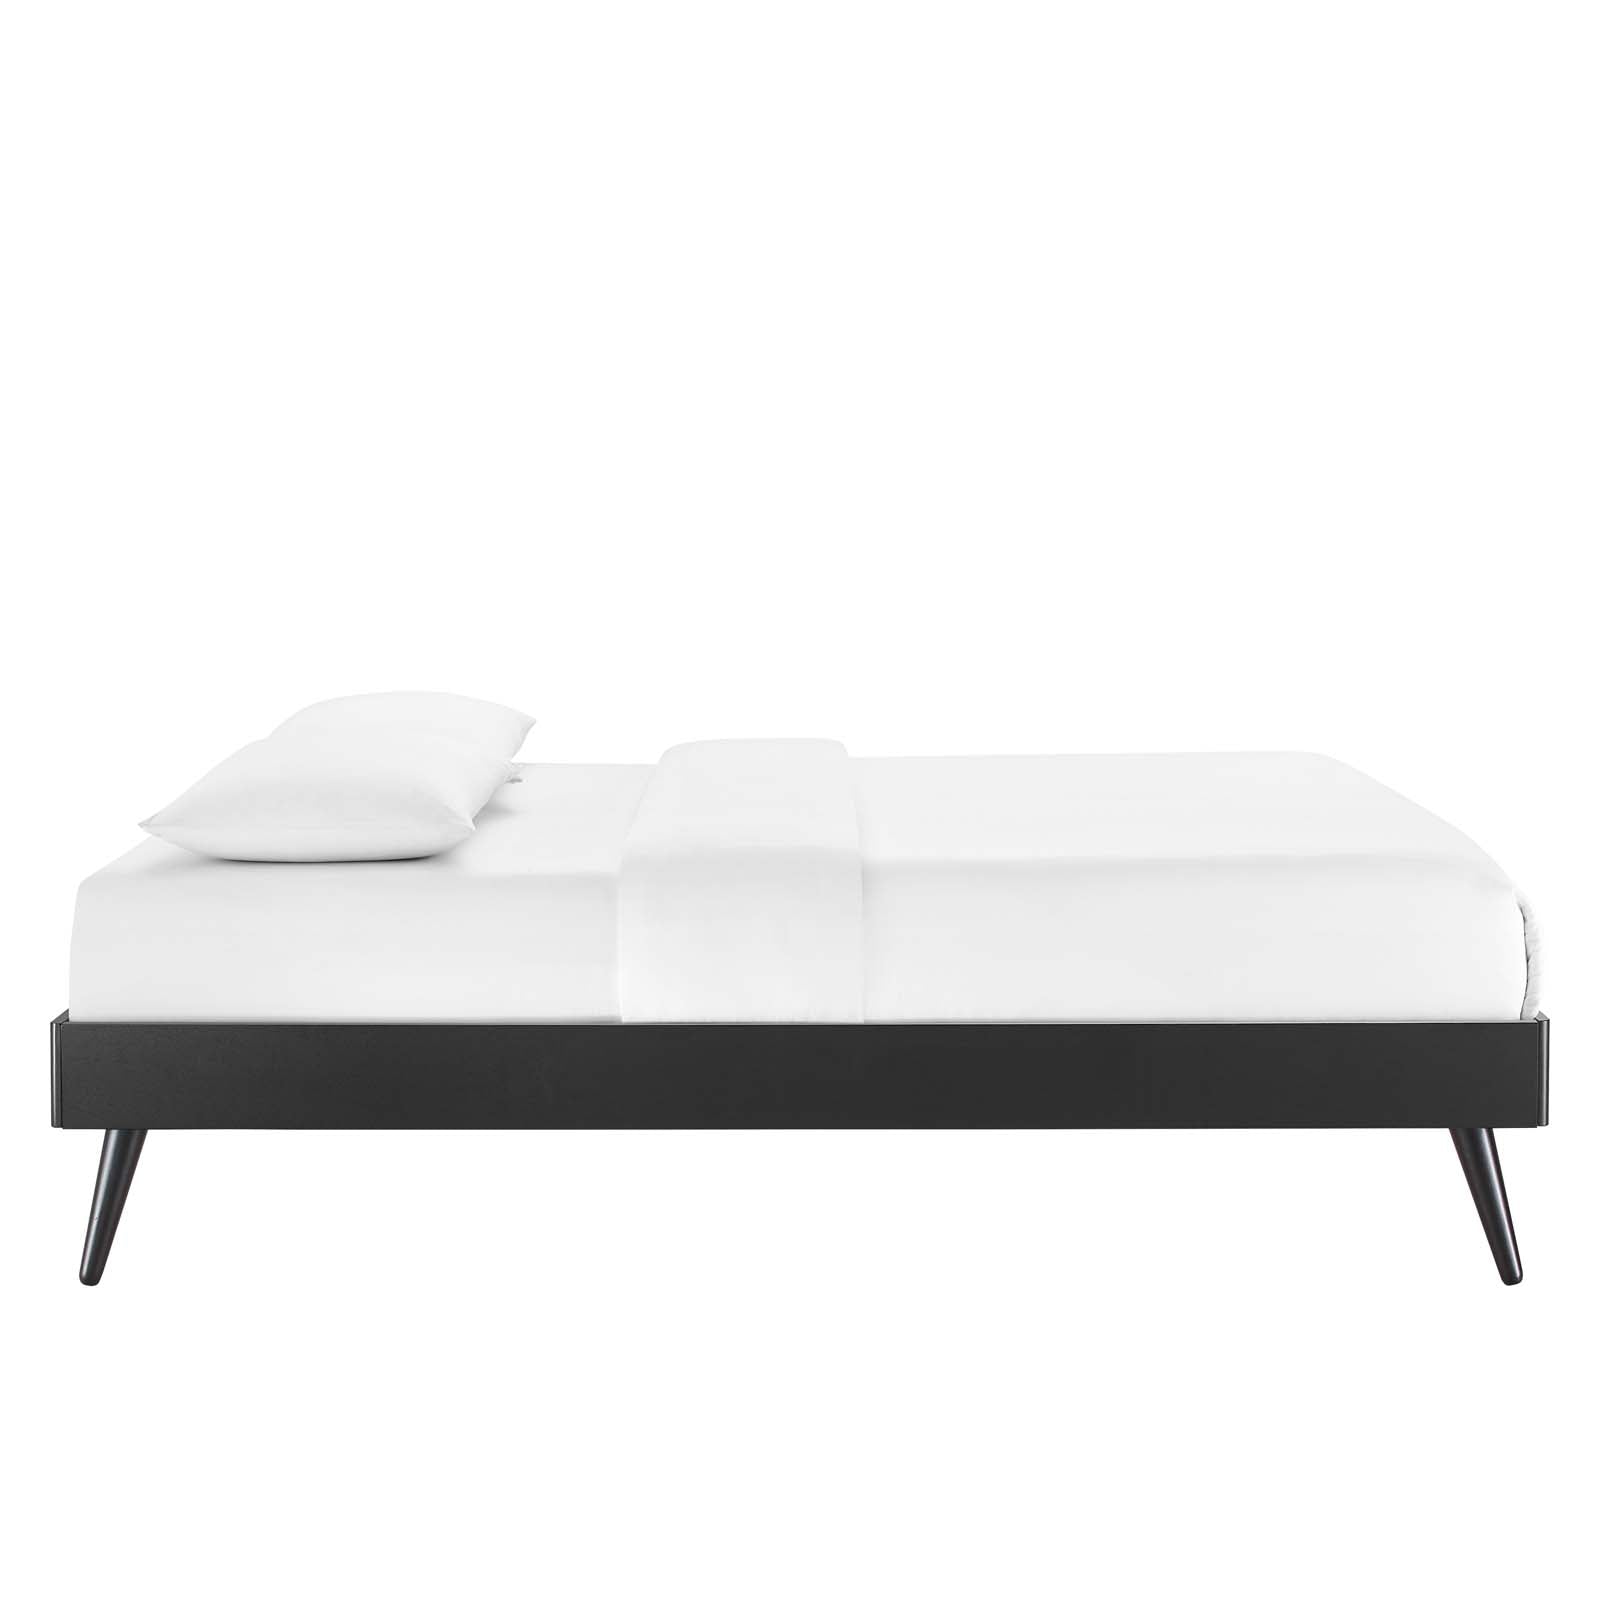 Modway Beds - Margo Queen Wood Platform Bed Frame Black